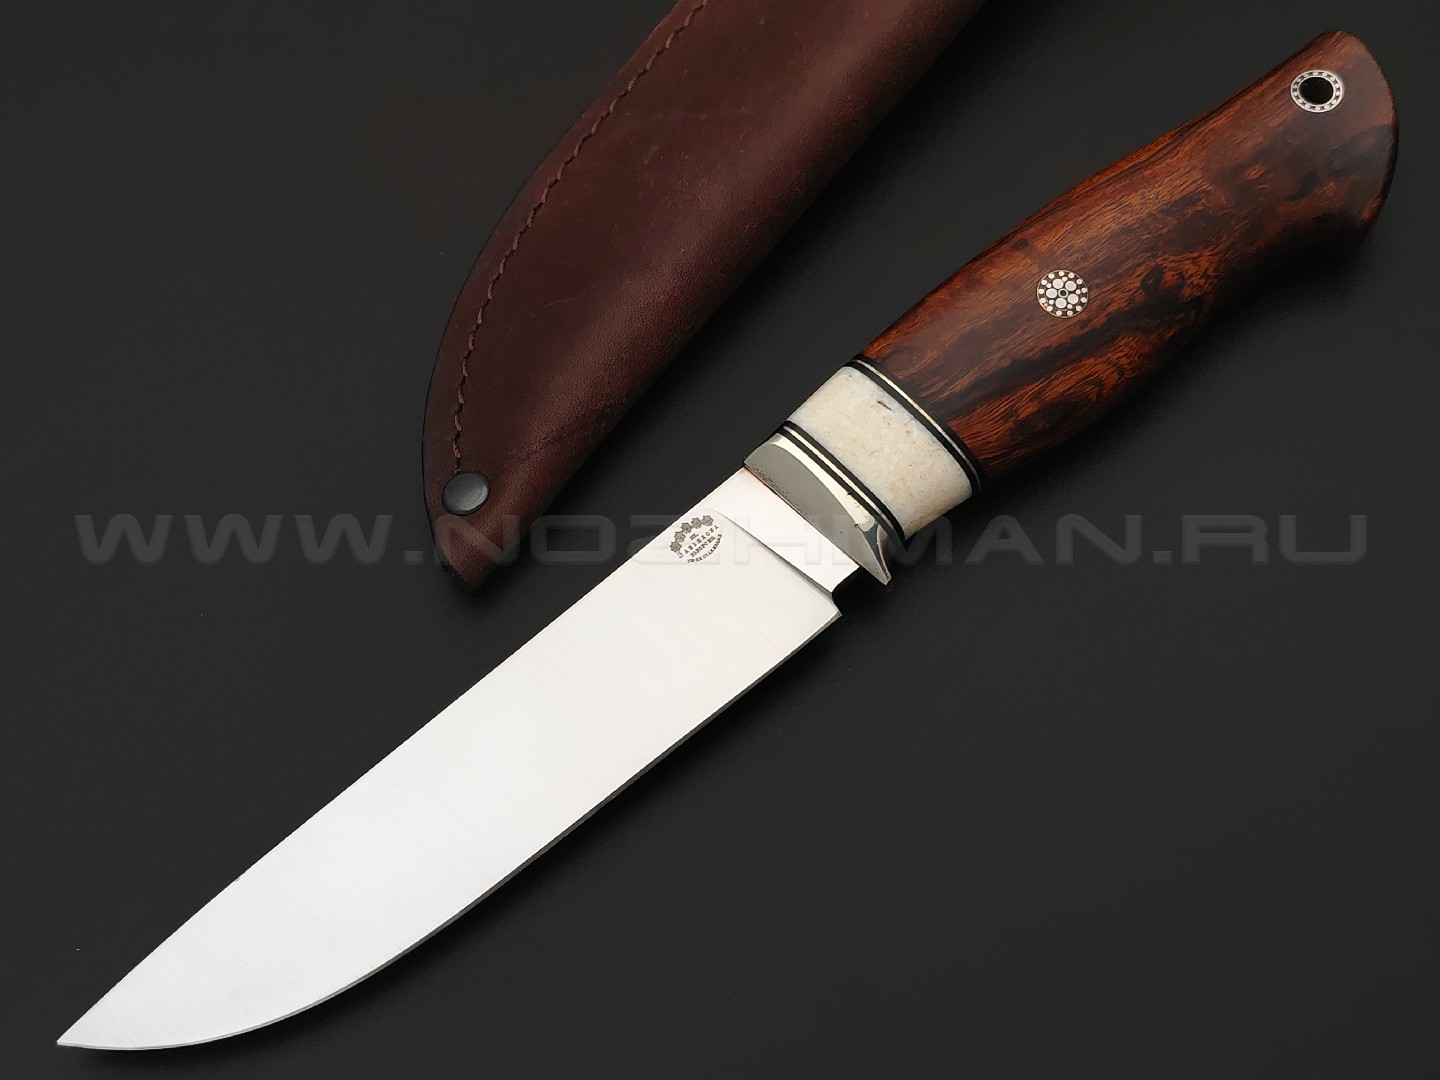 Товарищество Завьялова нож Ладья-2 сталь M390, рукоять Айронвуд, клык моржа, нейзильбер, пины